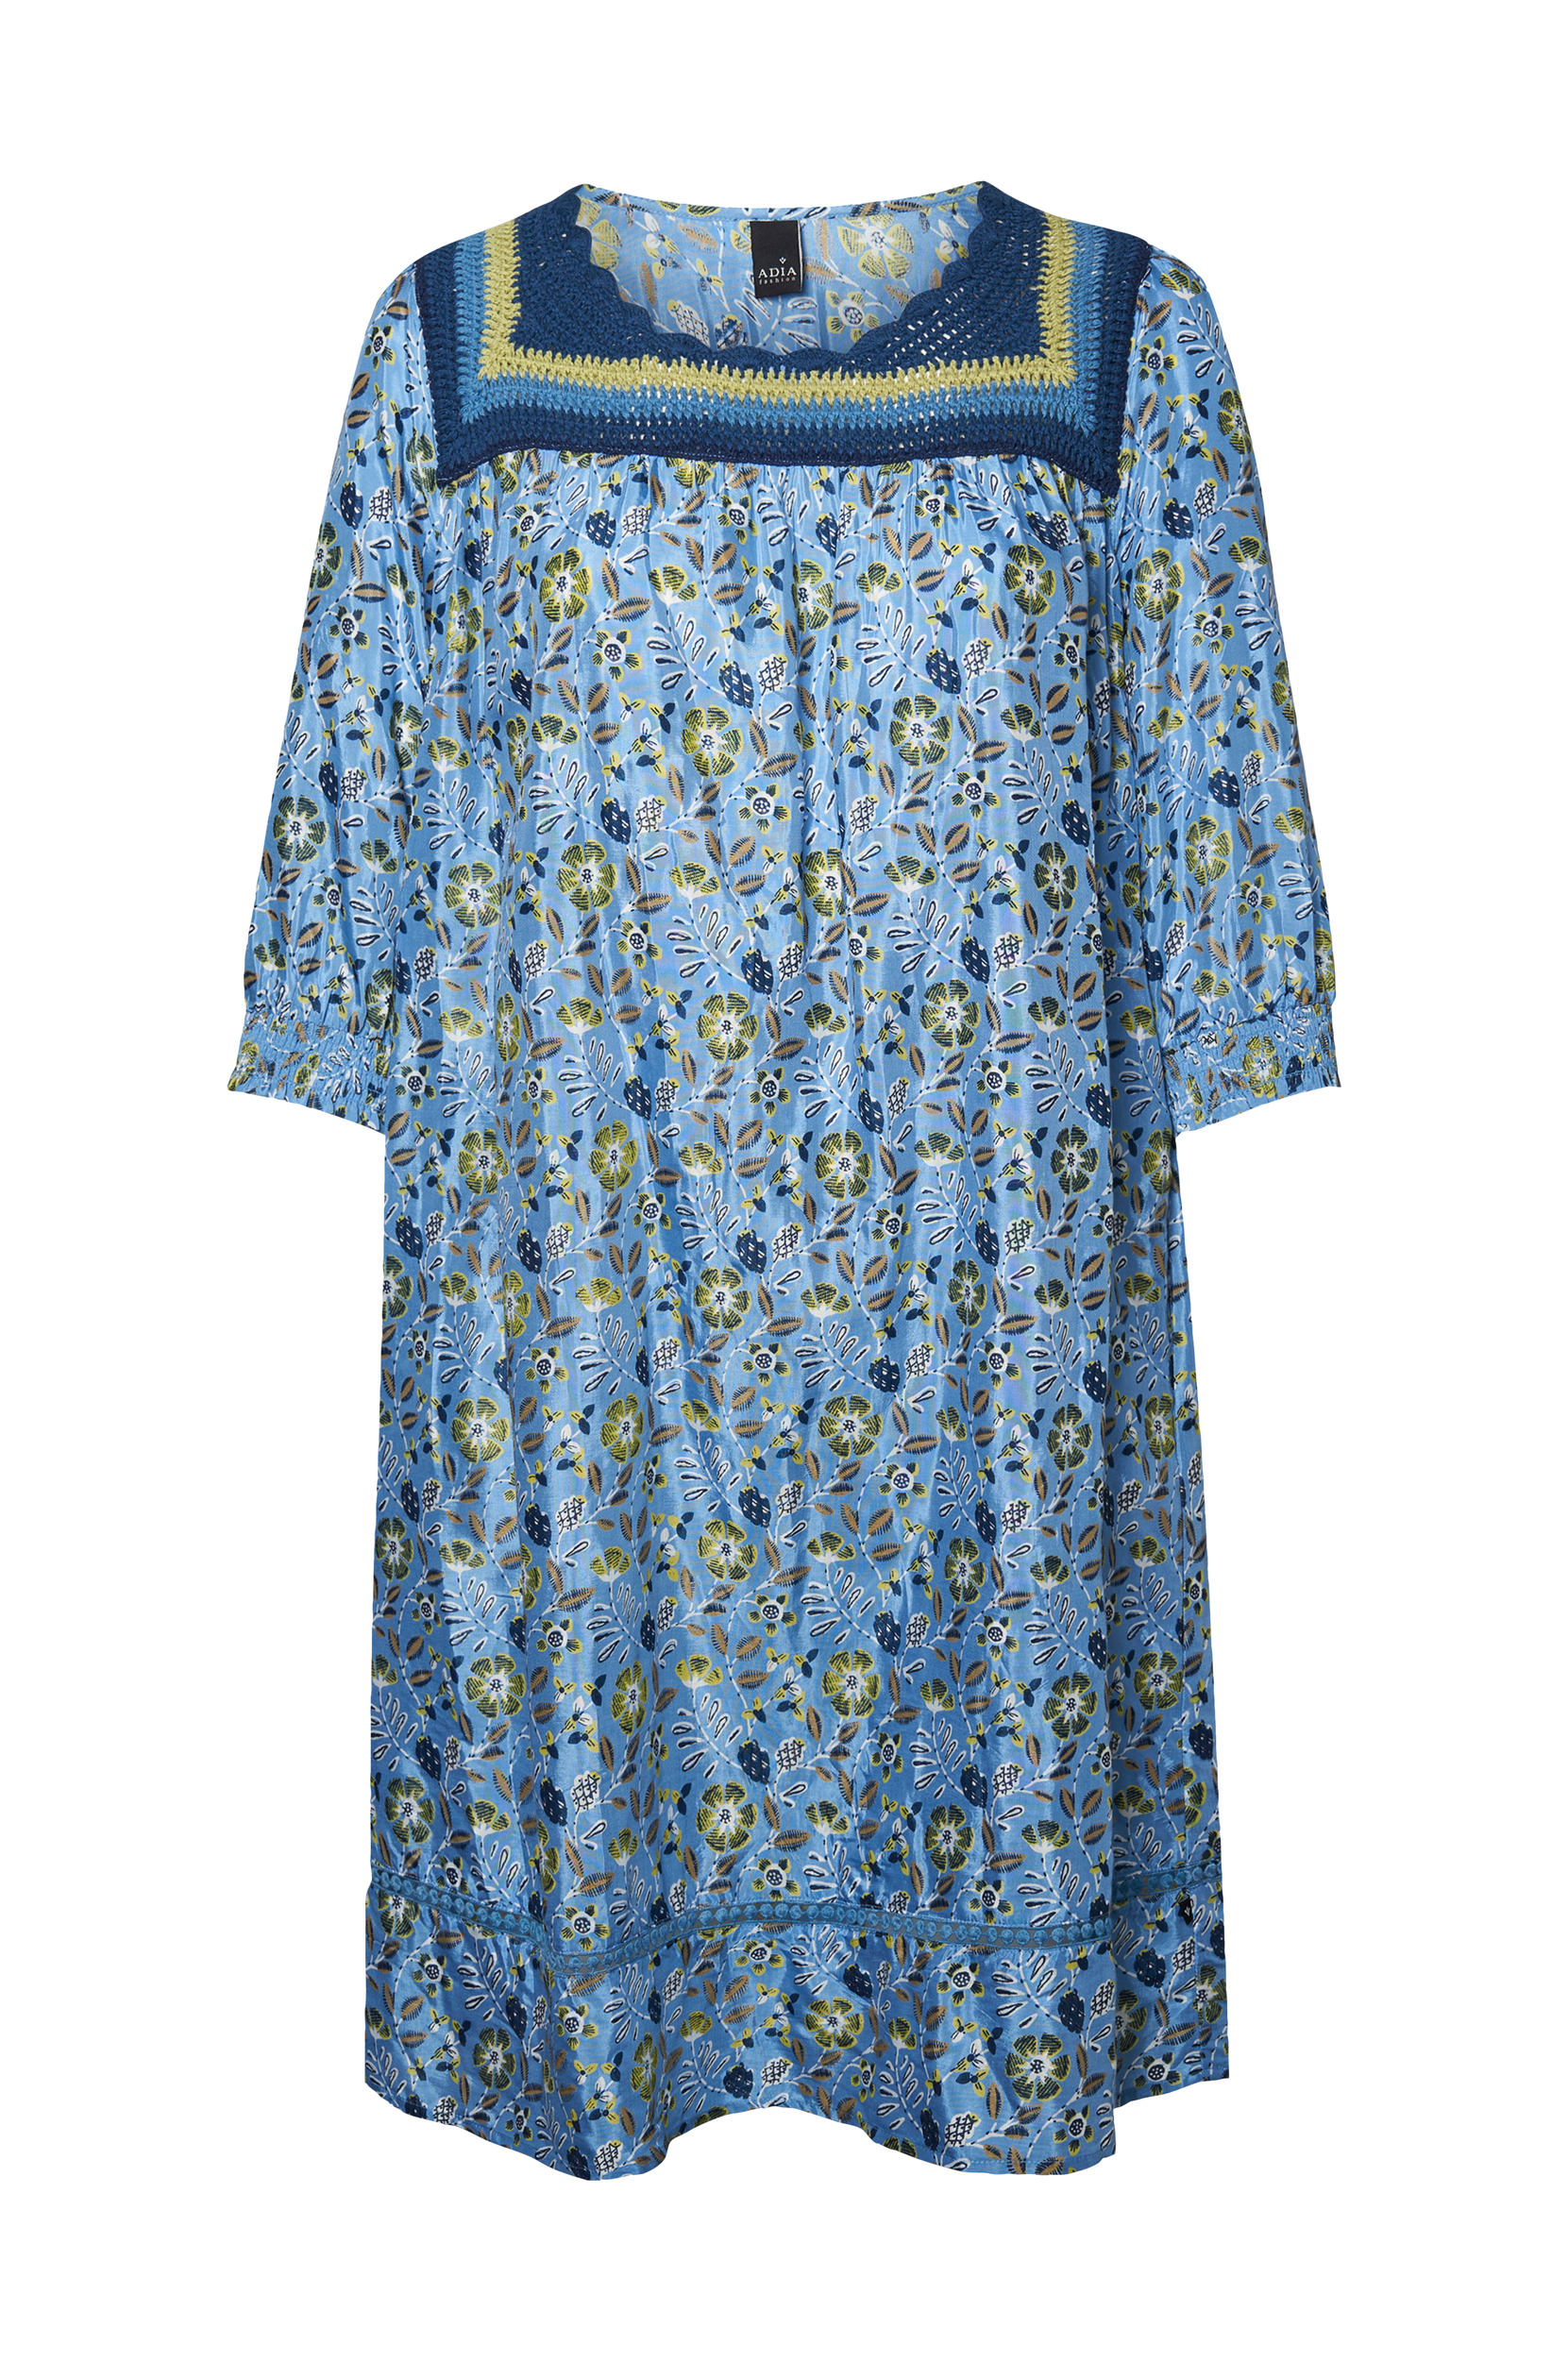 ADIA - Sophie - Blå 54 - Kjoler - Tøj til kvinder (30224603)